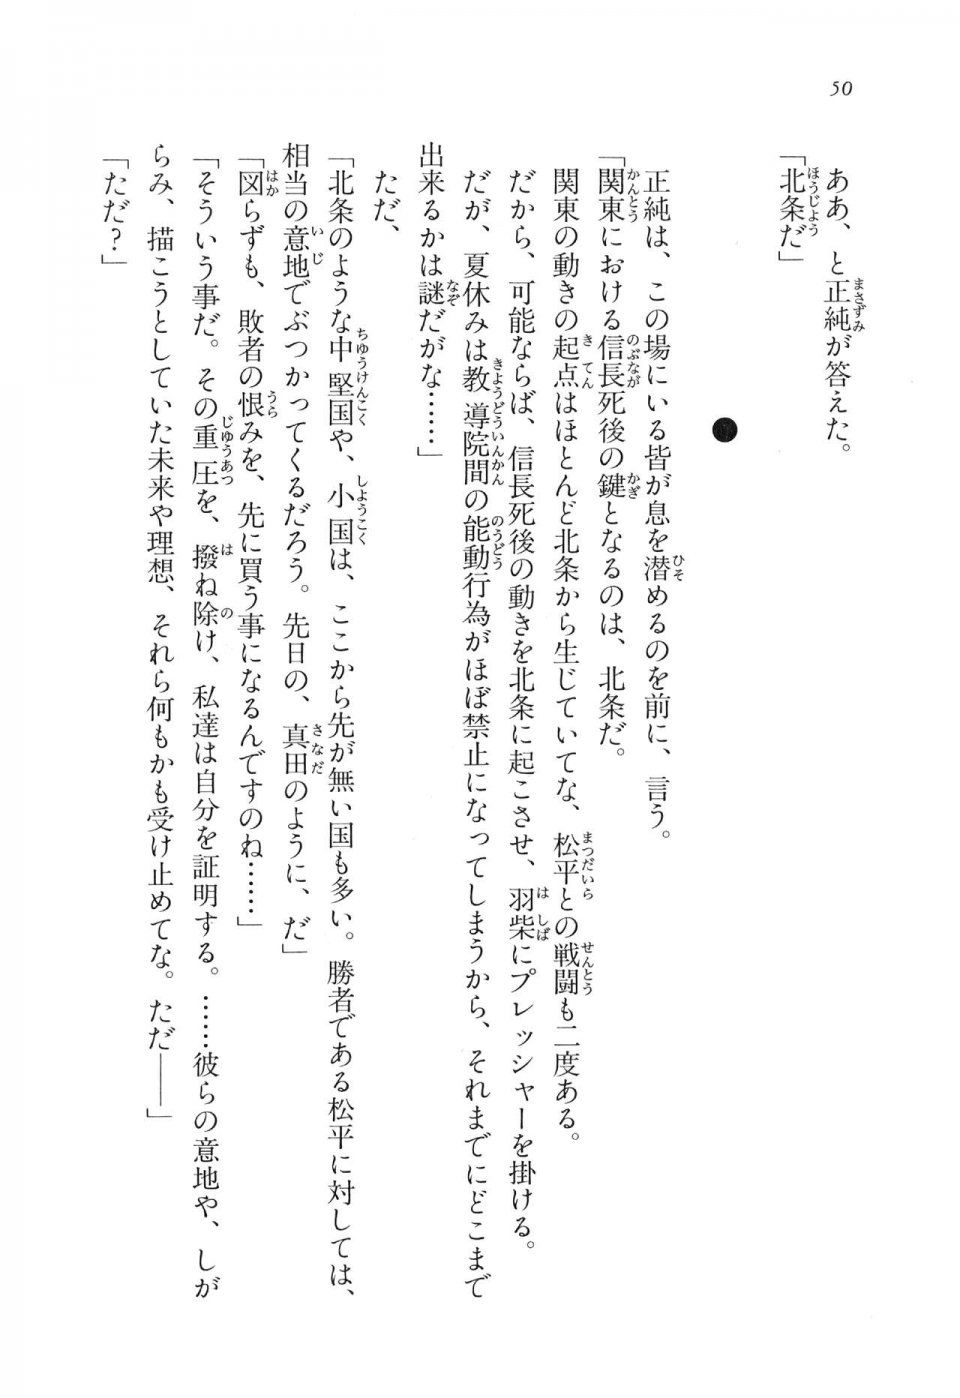 Kyoukai Senjou no Horizon LN Vol 11(5A) - Photo #51